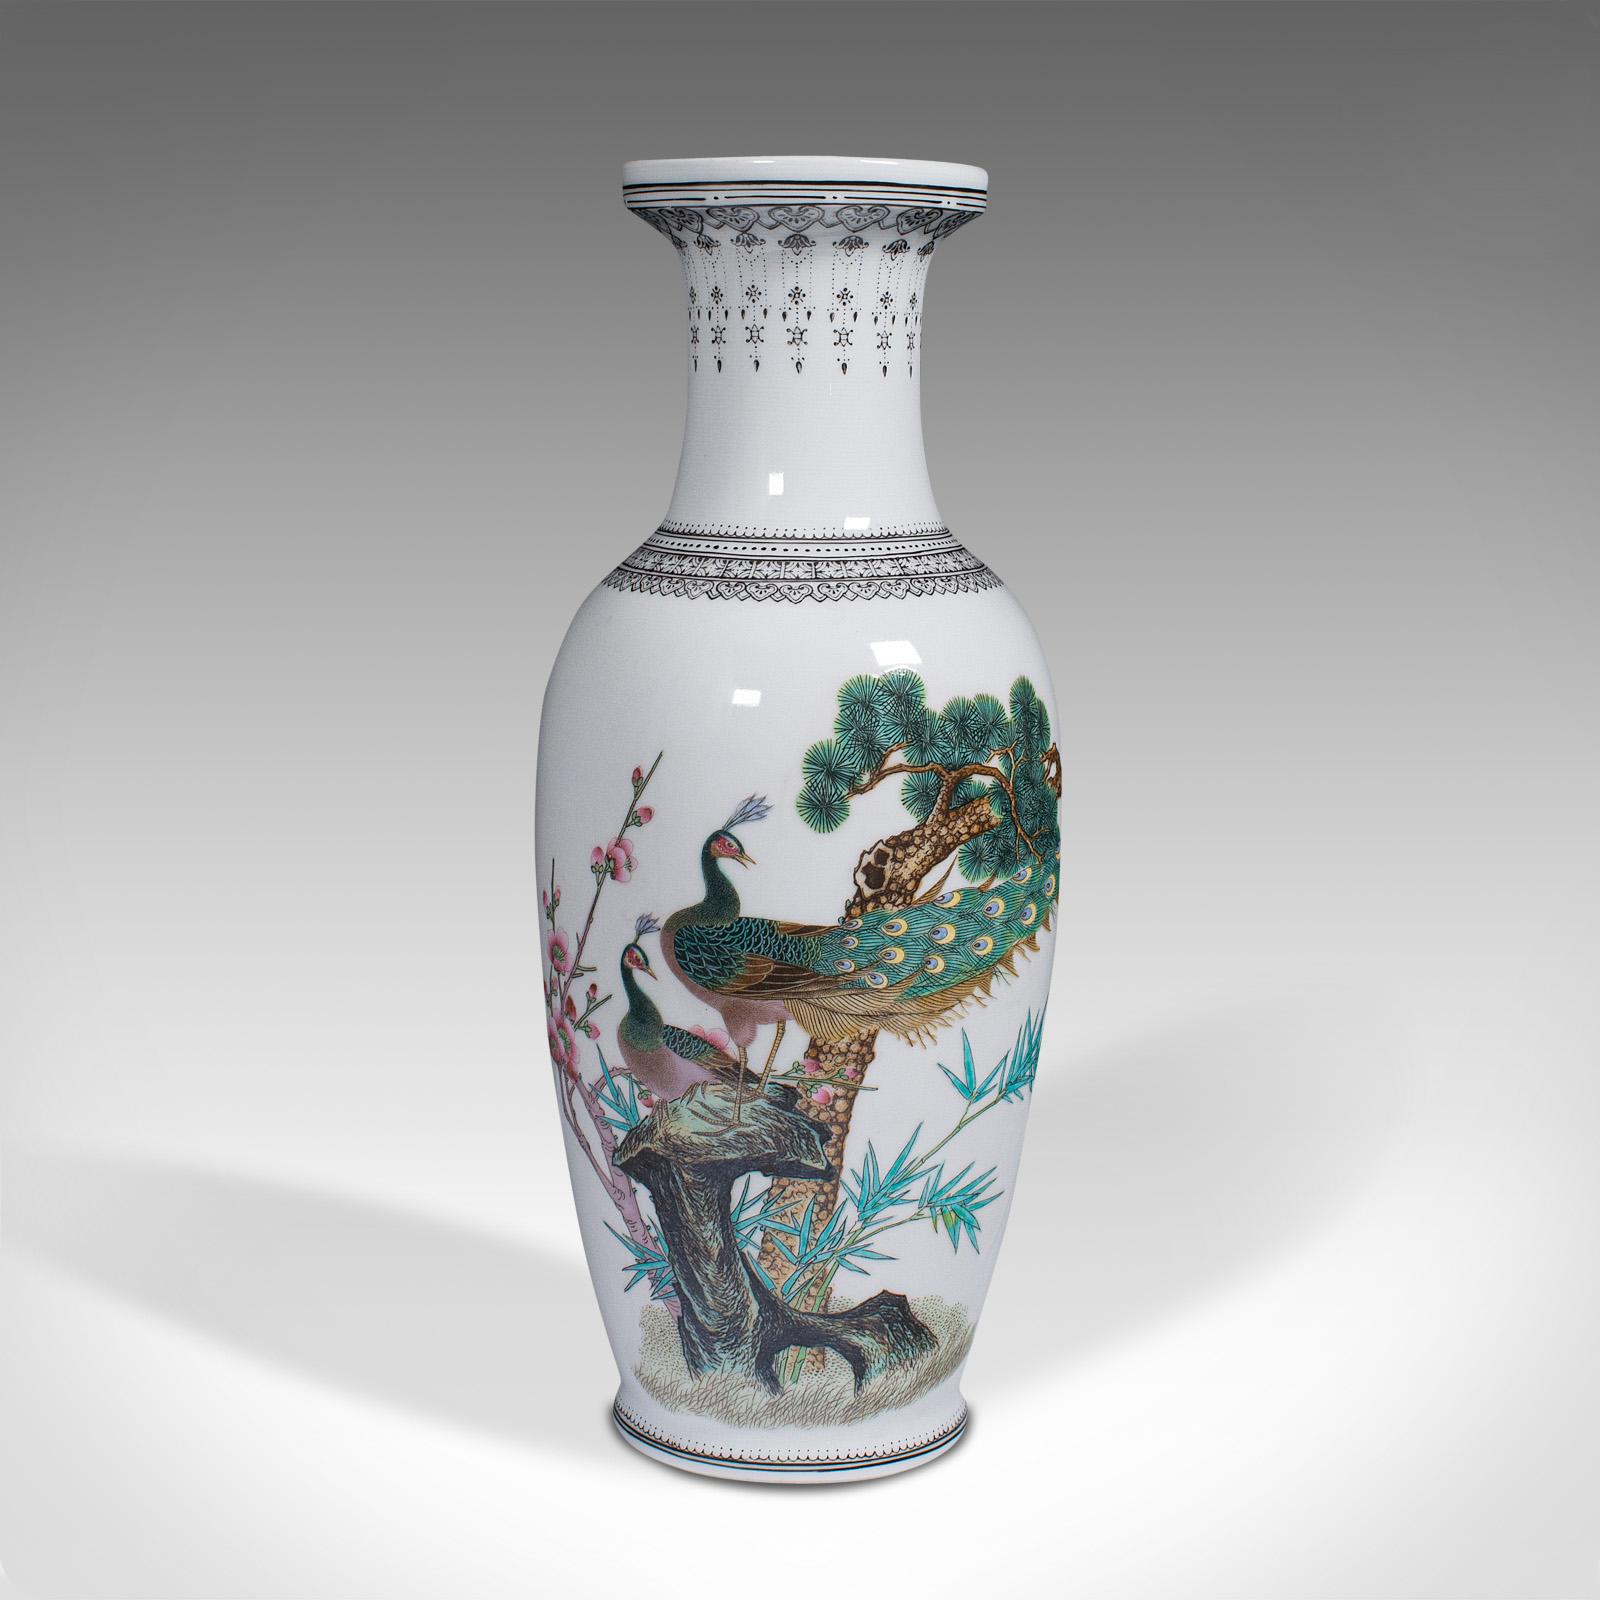 Dies ist eine dekorative Vase im Vintage-Stil. Eine chinesische Blumenurne aus Keramik mit Pfauendekor aus der Mitte des 20. Jahrhunderts, um 1960. 

Angenehm detaillierte Vase mit starkem orientalischen Geschmack
Zeigt eine wünschenswerte